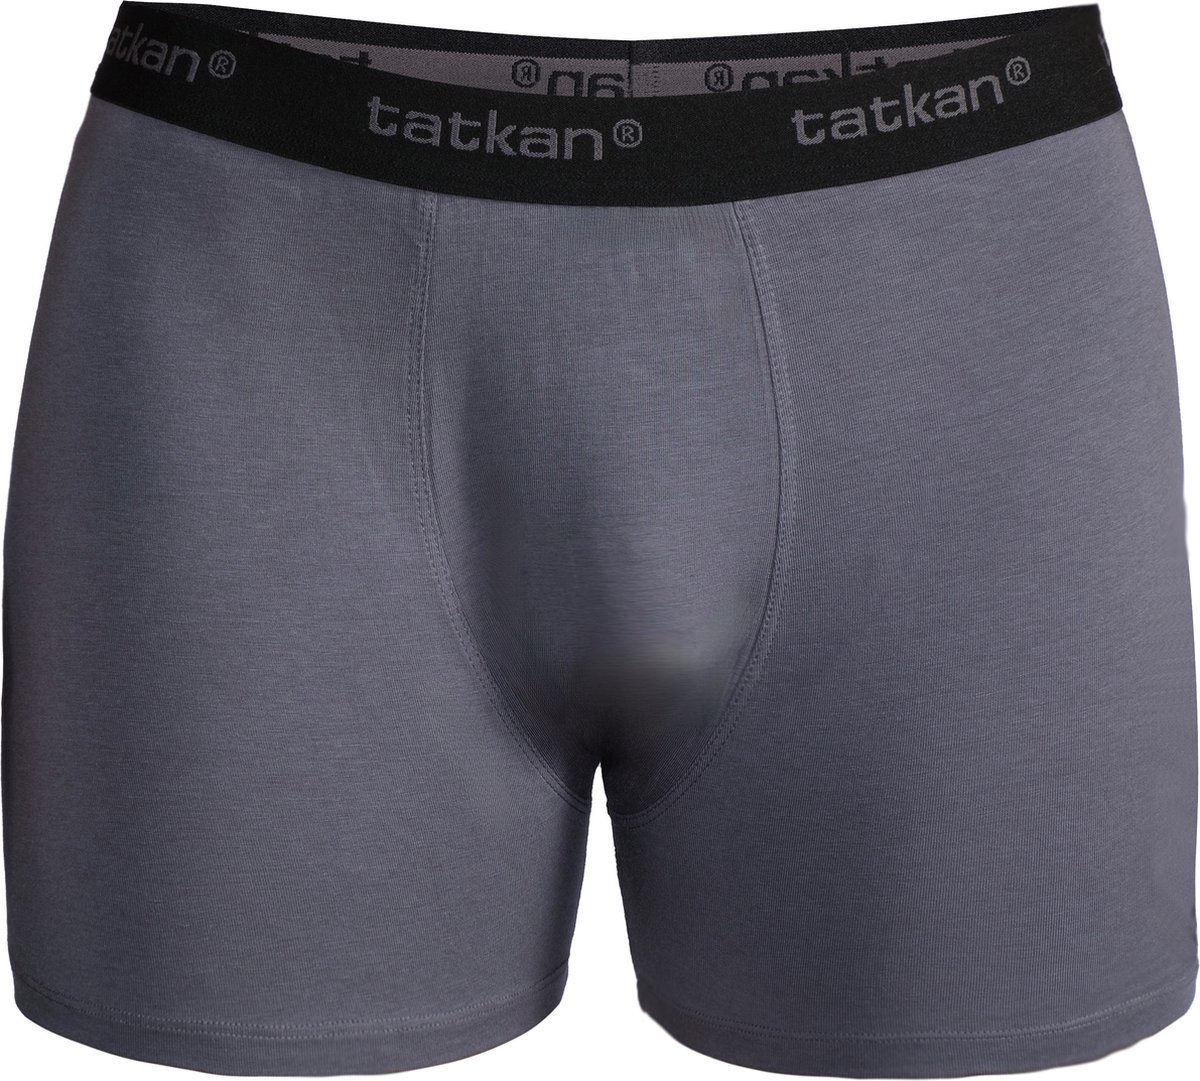 Tatkan - Underwear Heren Boxershorts - Modal Heren Ondergoed - Modal Boxershorts voor Mannen - Heren Onderbroeken - Normale pijp - Maat XL - 4-pack - 2 Zwart, 2 Donker Grijs